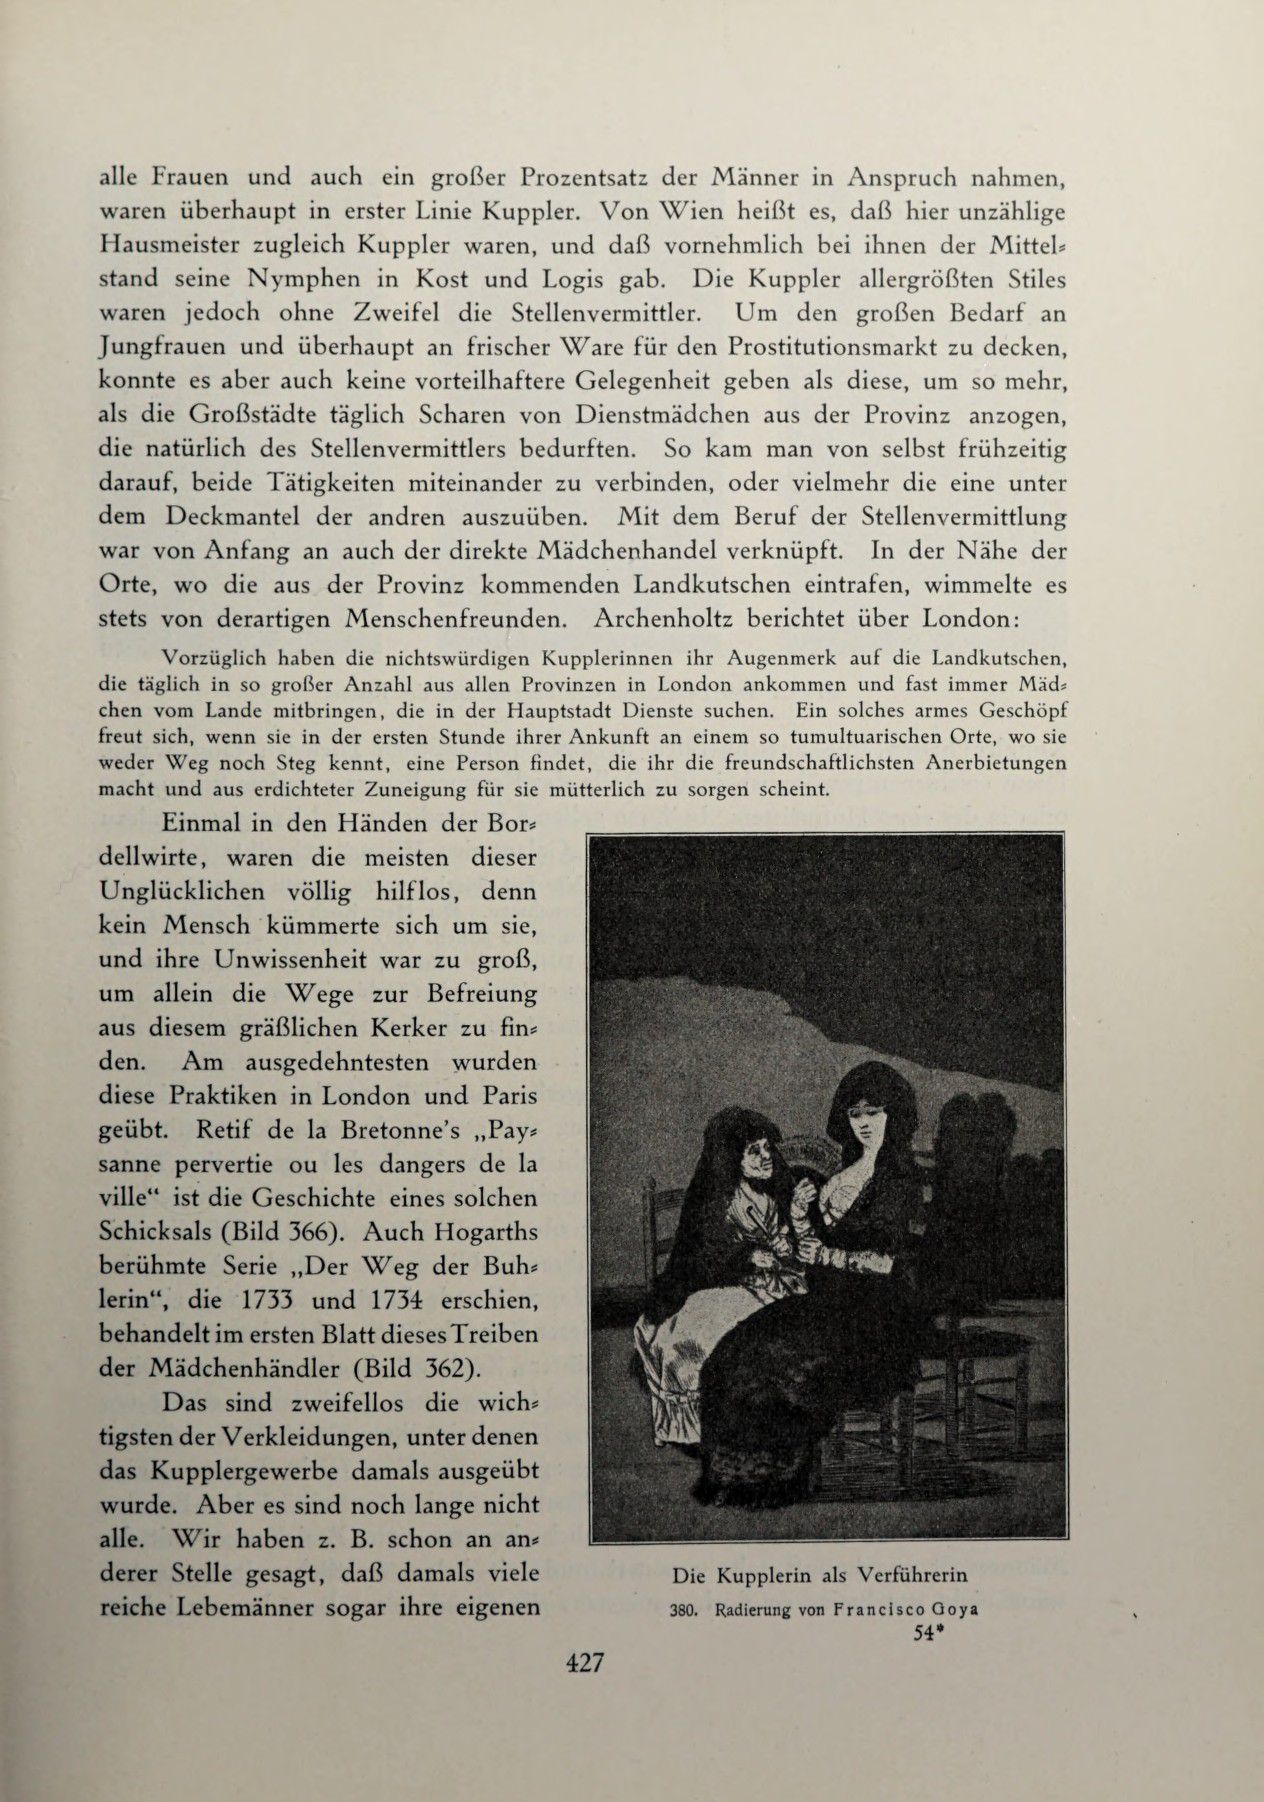 [Eduard Fuchs] Illustrierte Sittengeschichte vom Mittelalter bis zur Gegenwart: Bd. 2. and Ergänzungsband. Die galante Zeit [German] 614